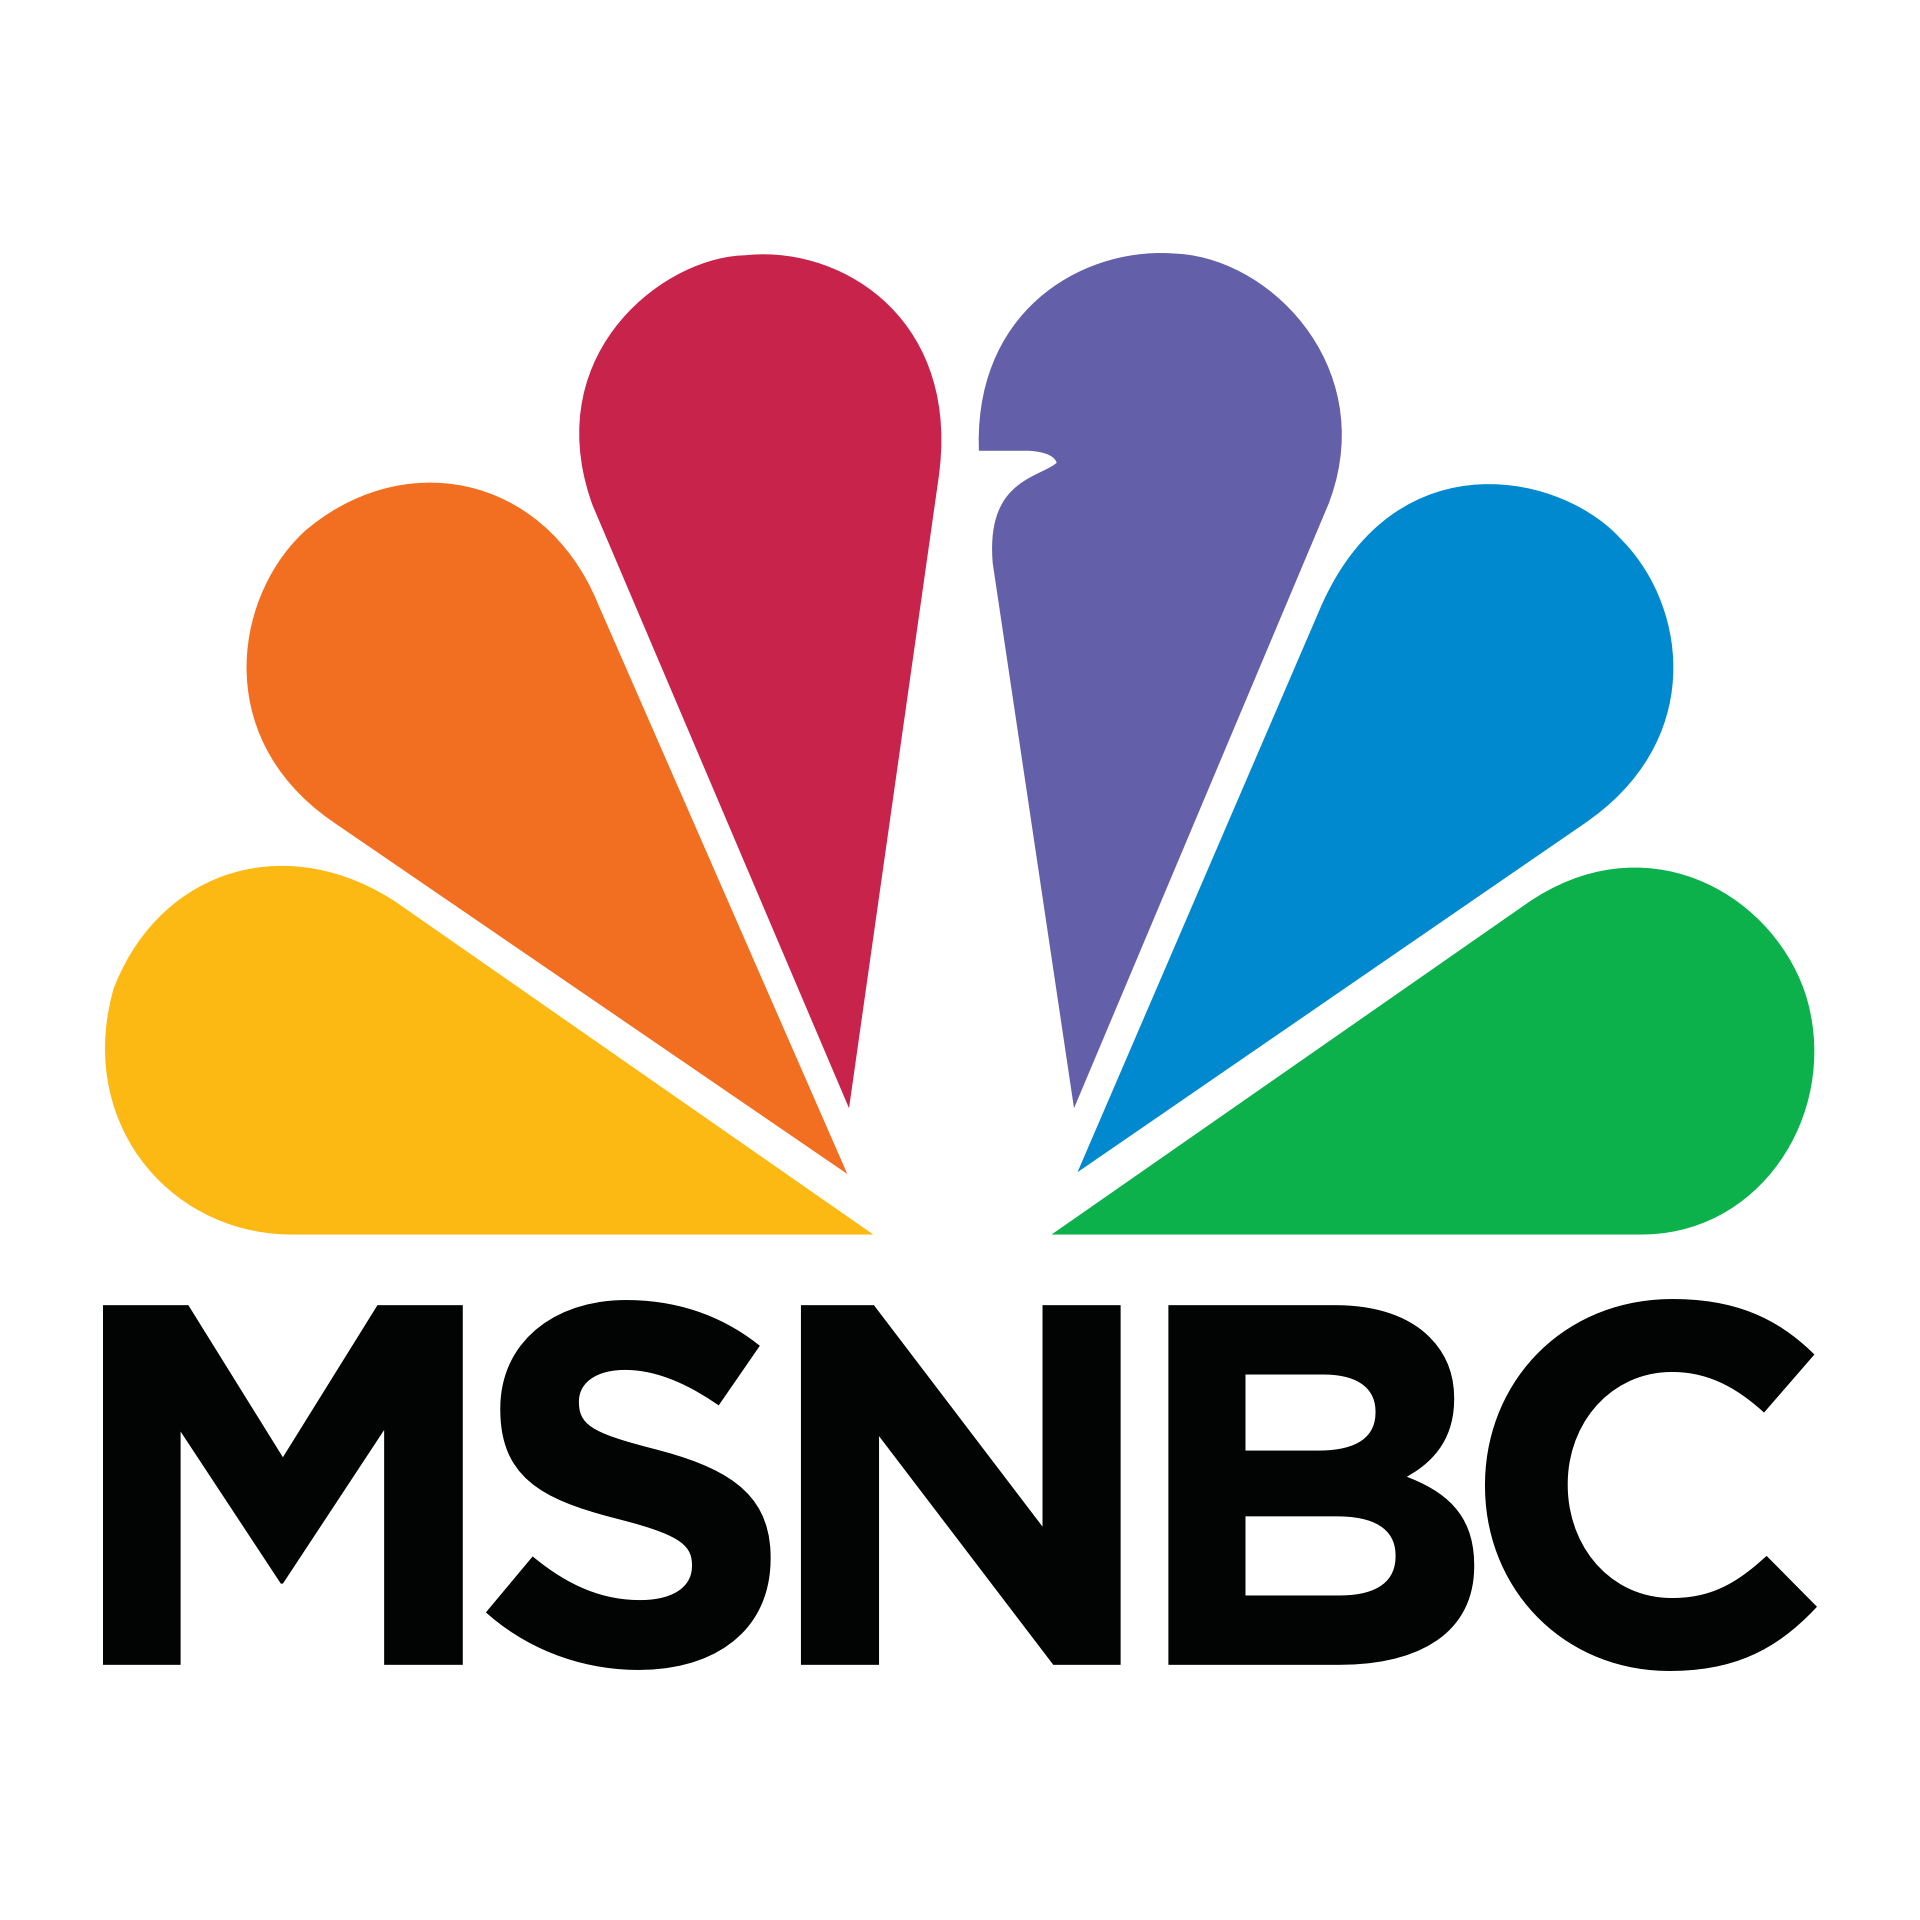 msnbc-logo-png-1920.png